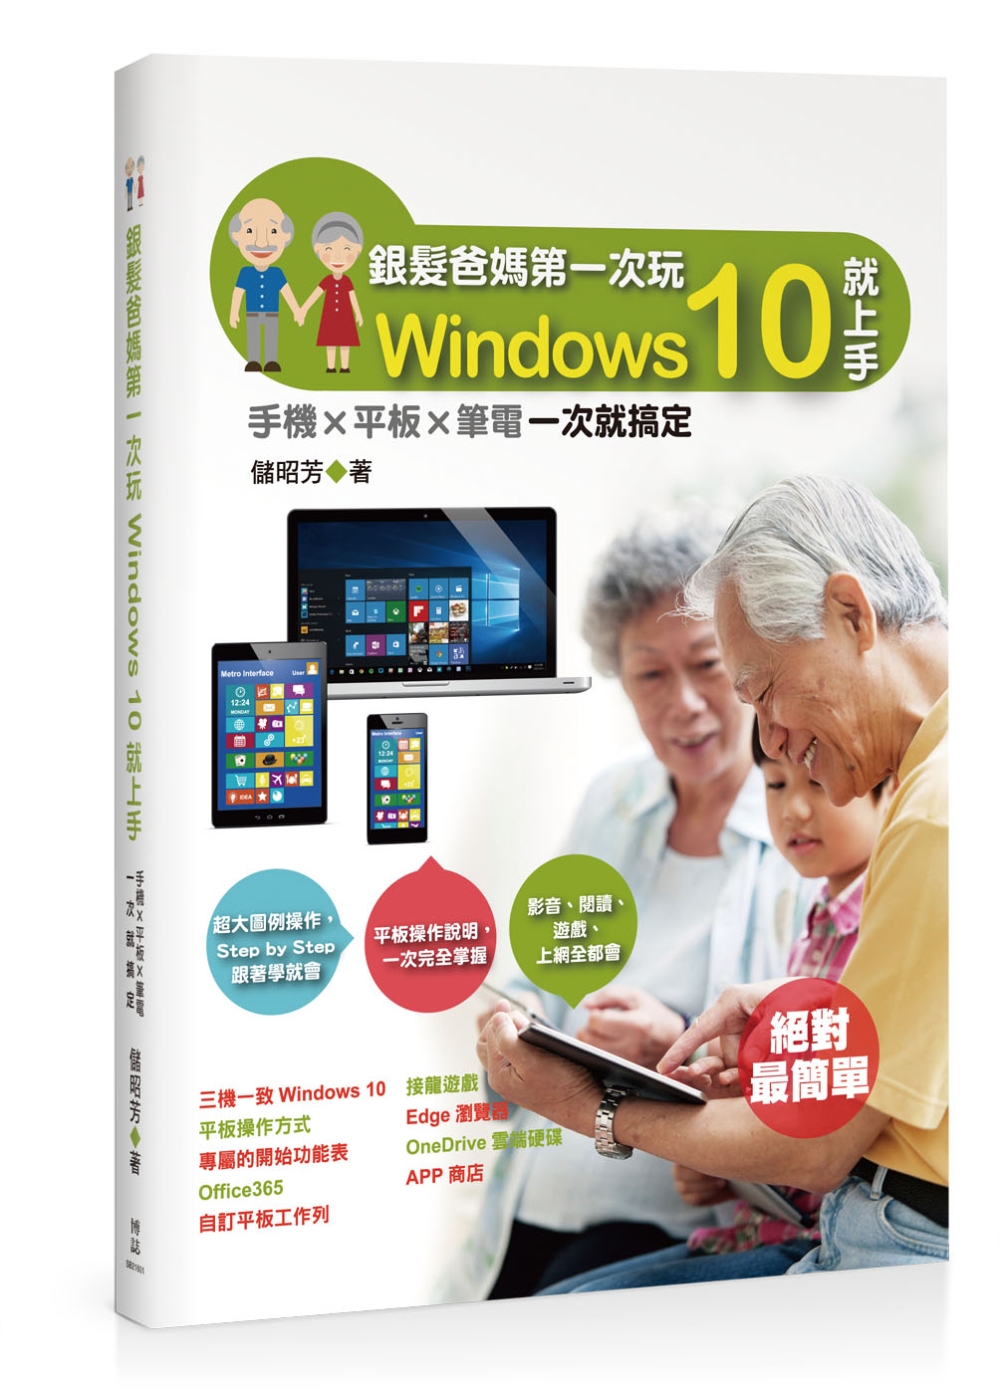 銀髮爸媽第一次玩Windows 10就上手：手機╳平板╳筆電一次就搞定